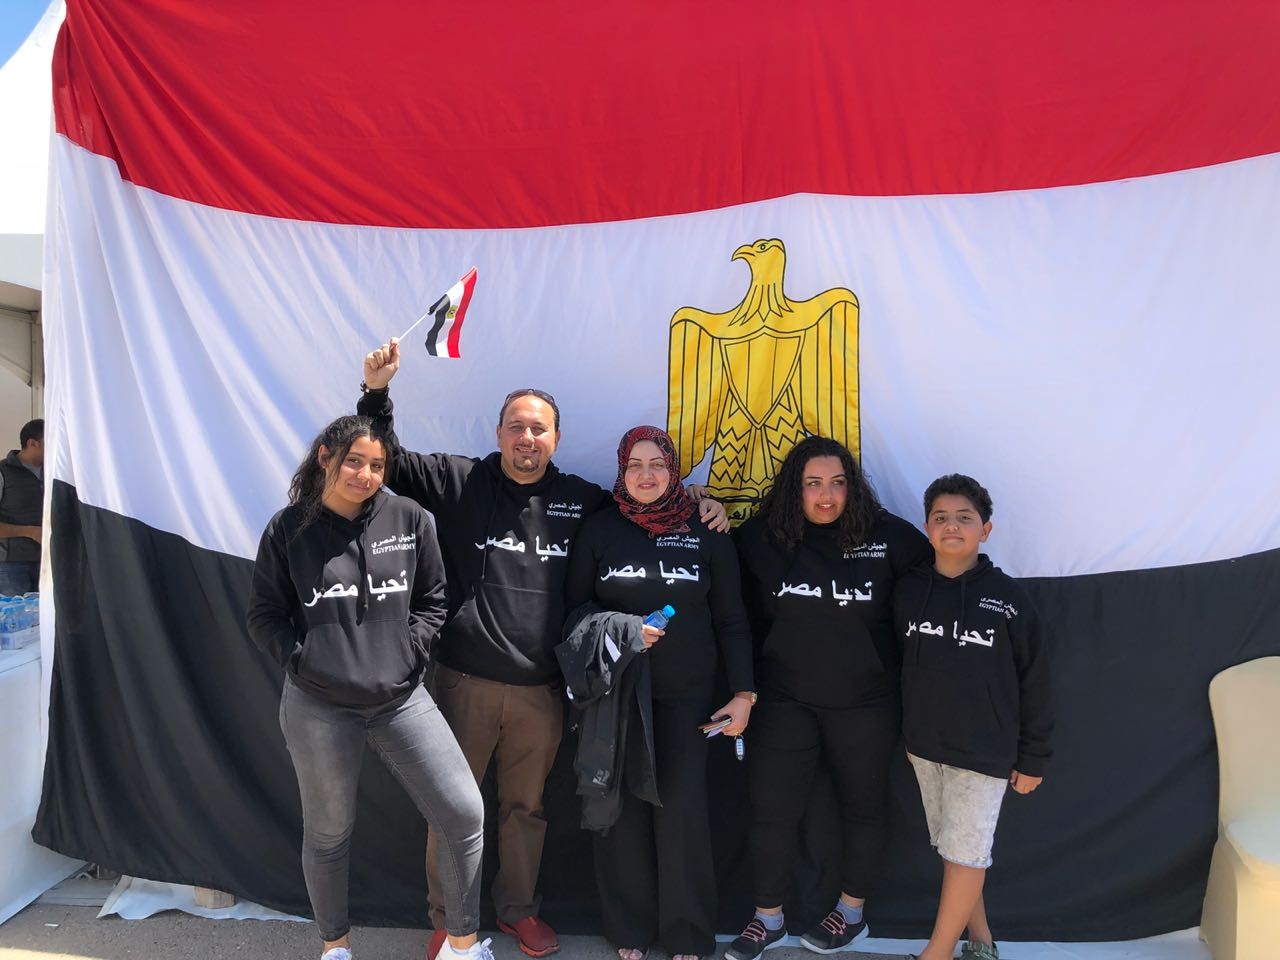  توافد المصريين في الإمارات للتصويت في الانتخابات الرئاسية